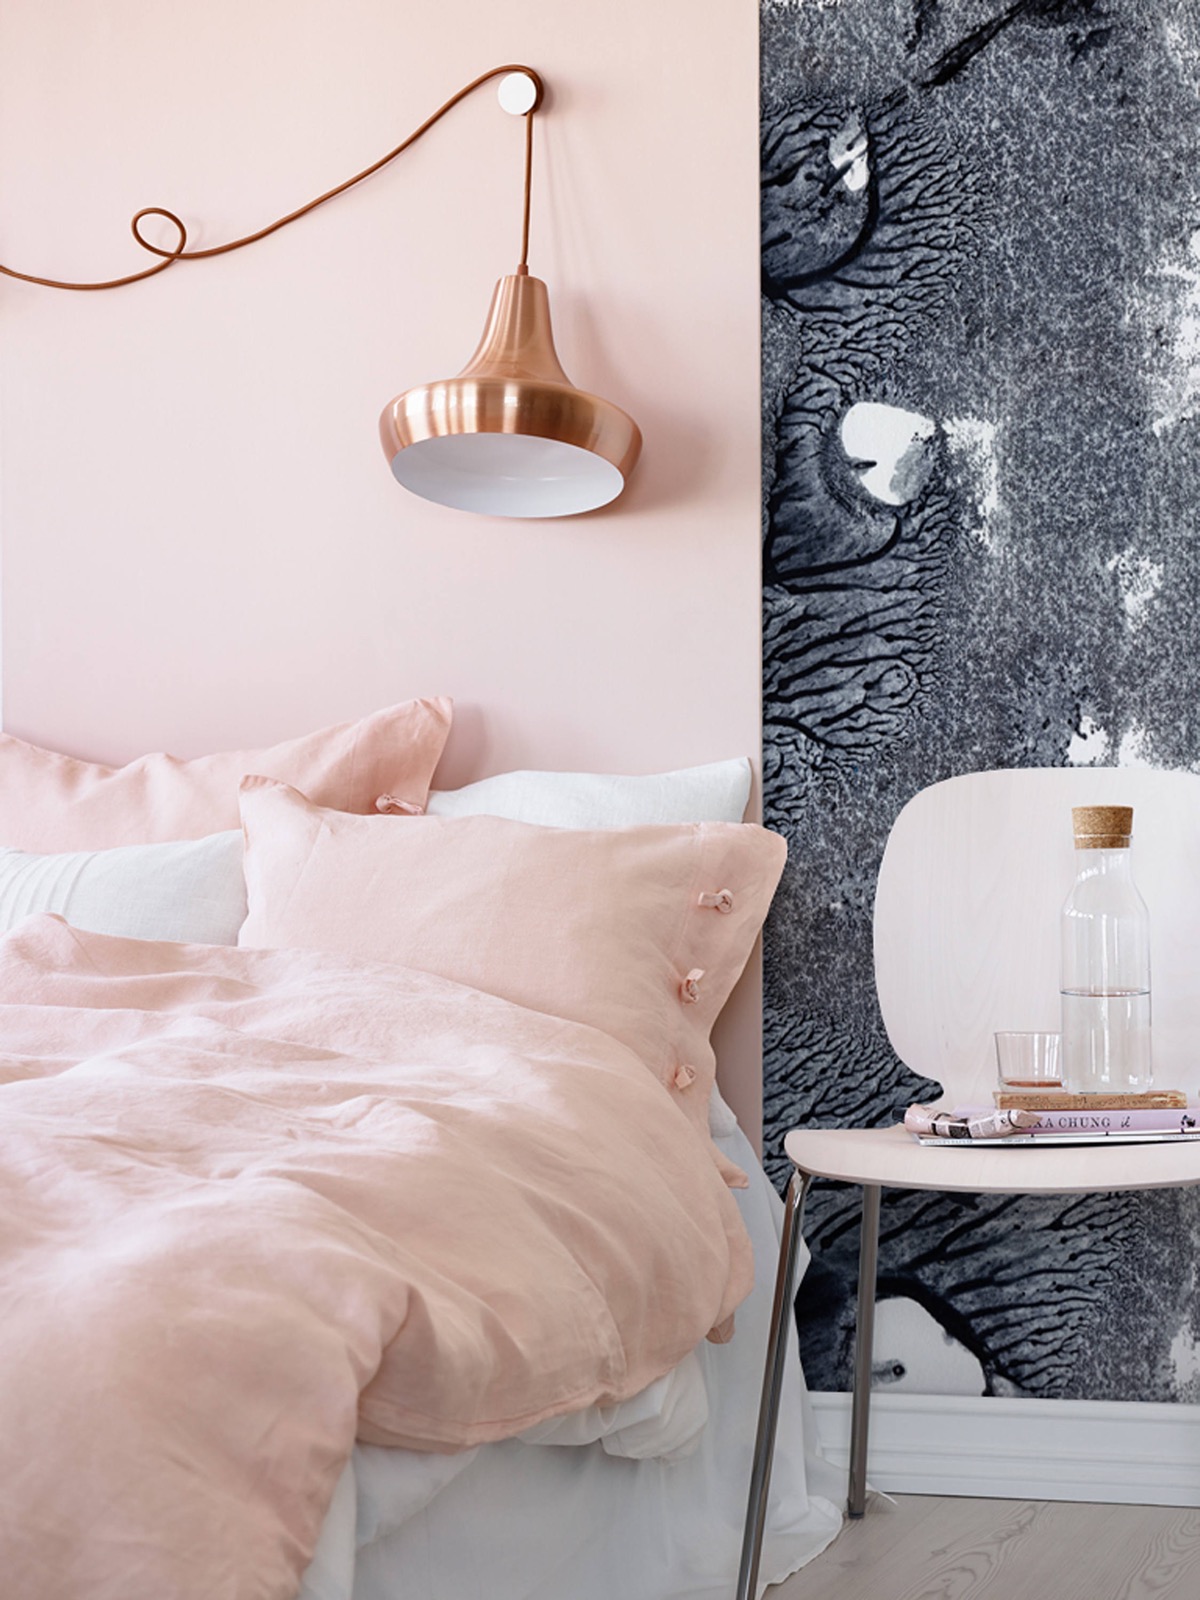 Bộ sưu tập phòng ngủ màu hồng với nhiều phong cách được yêu thích